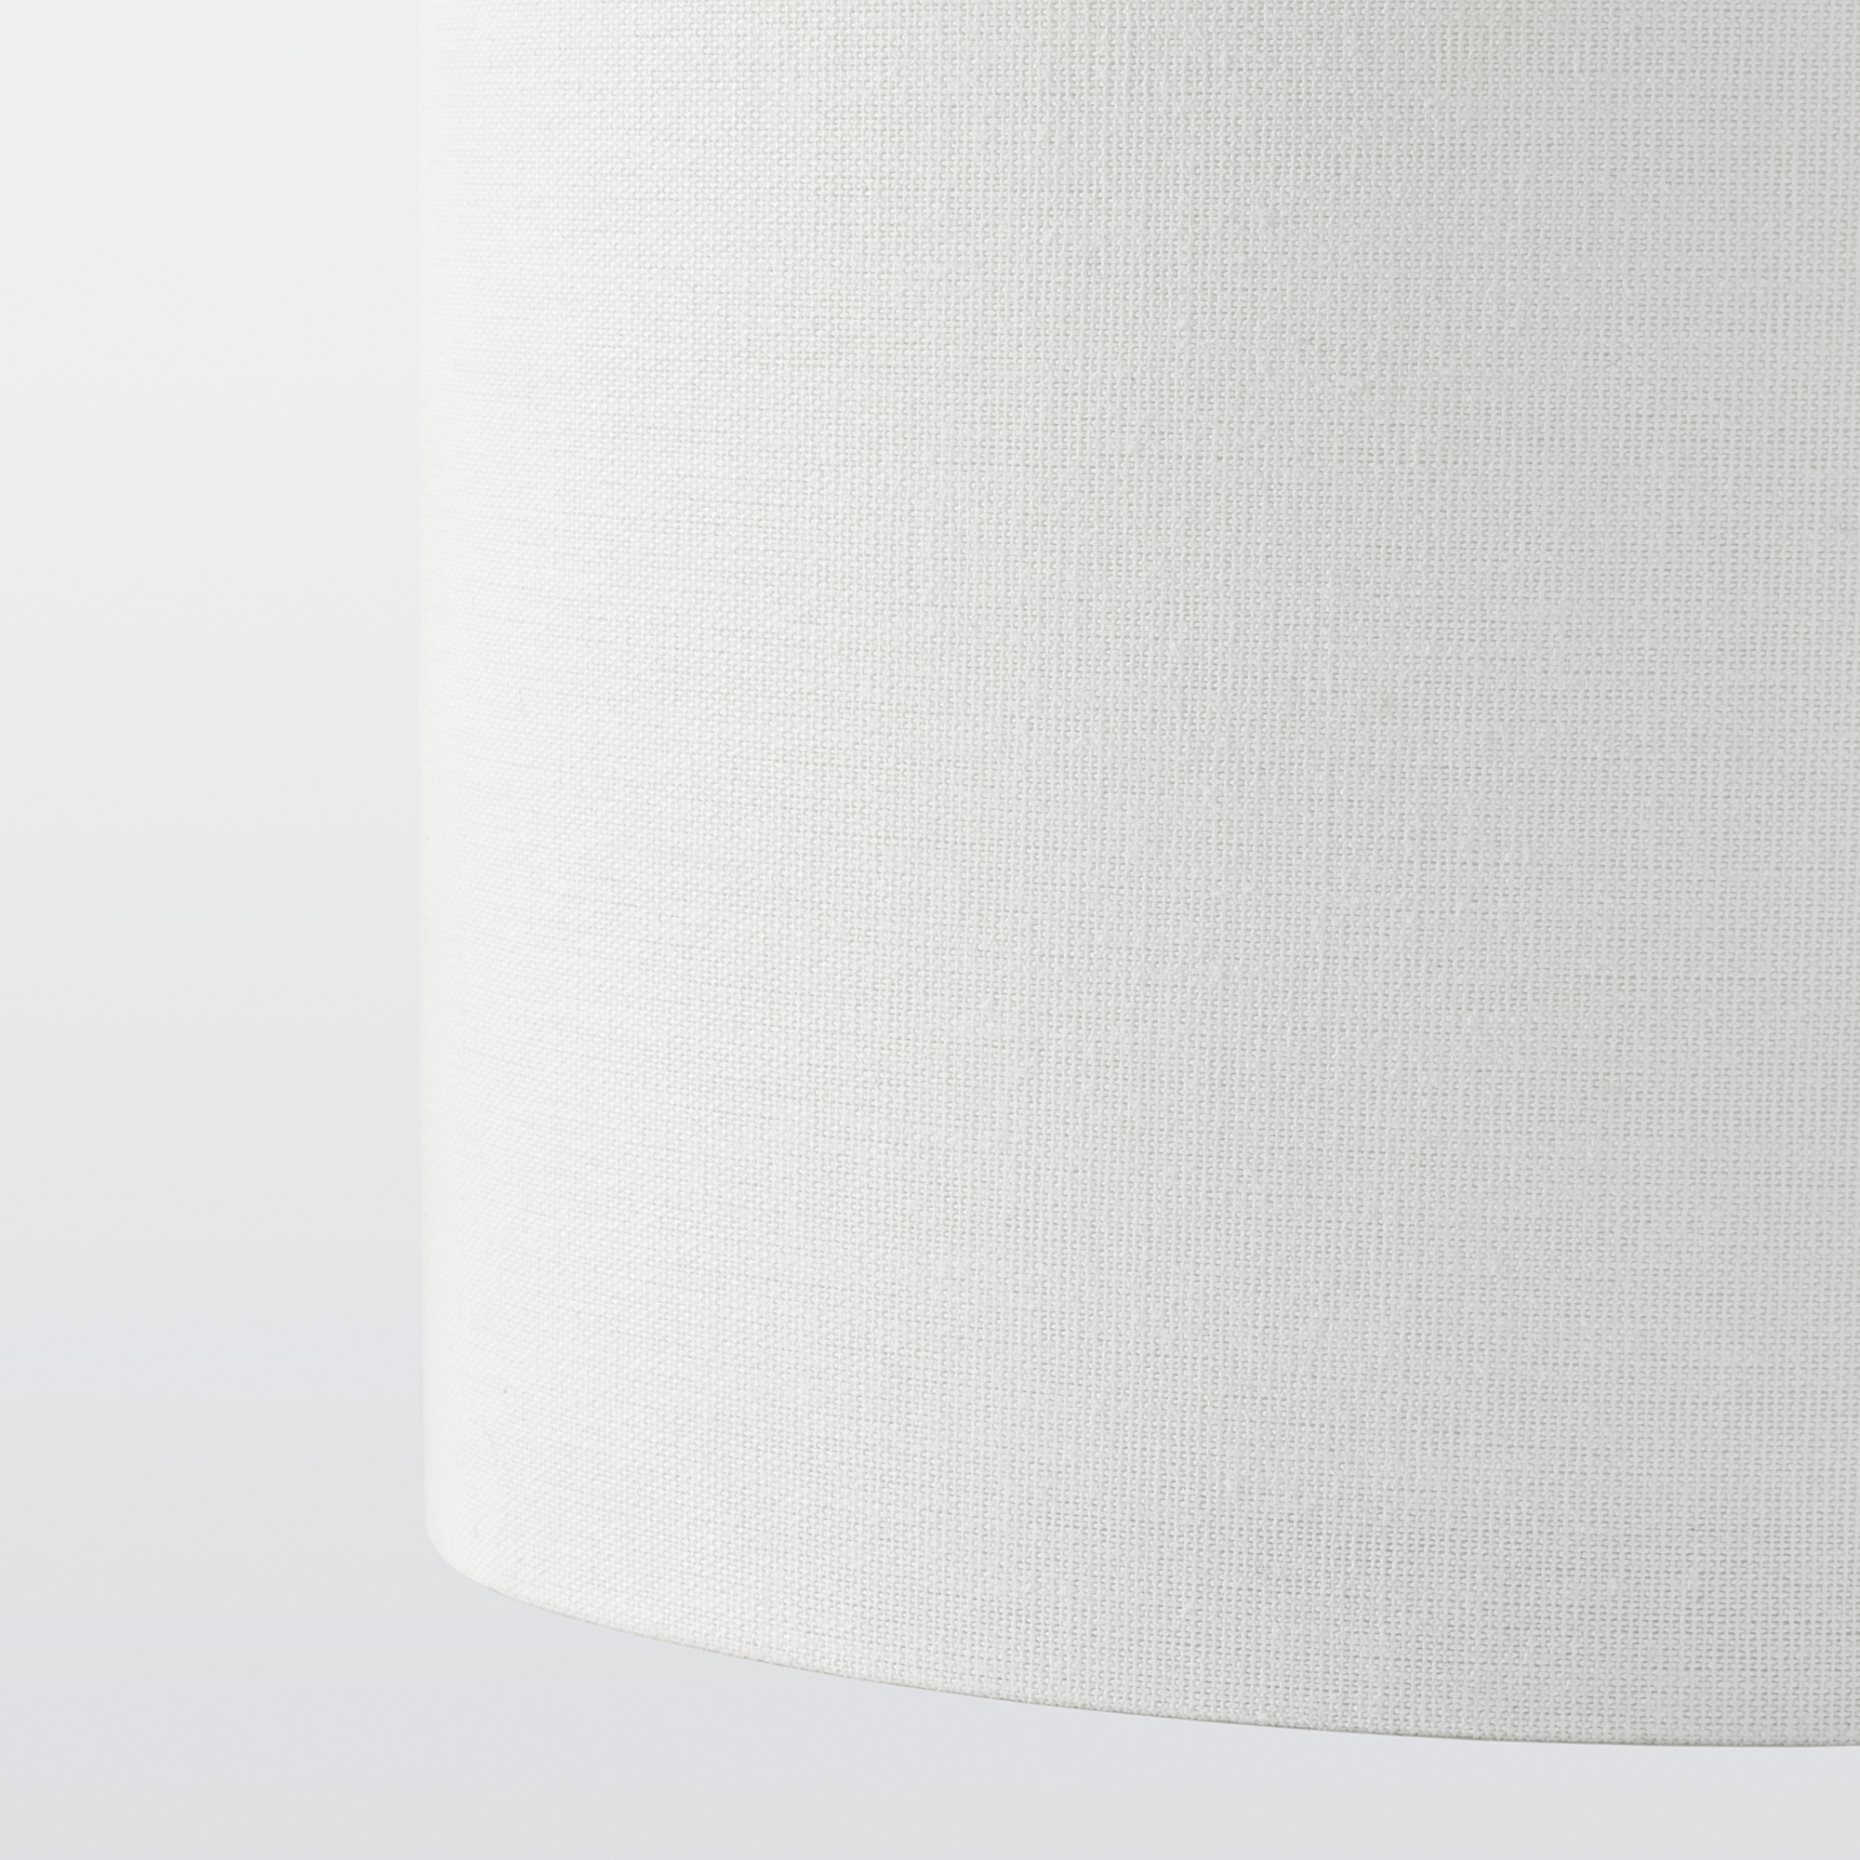 RINGSTA/SKAFTET, table lamp, 41 cm, 293.856.91